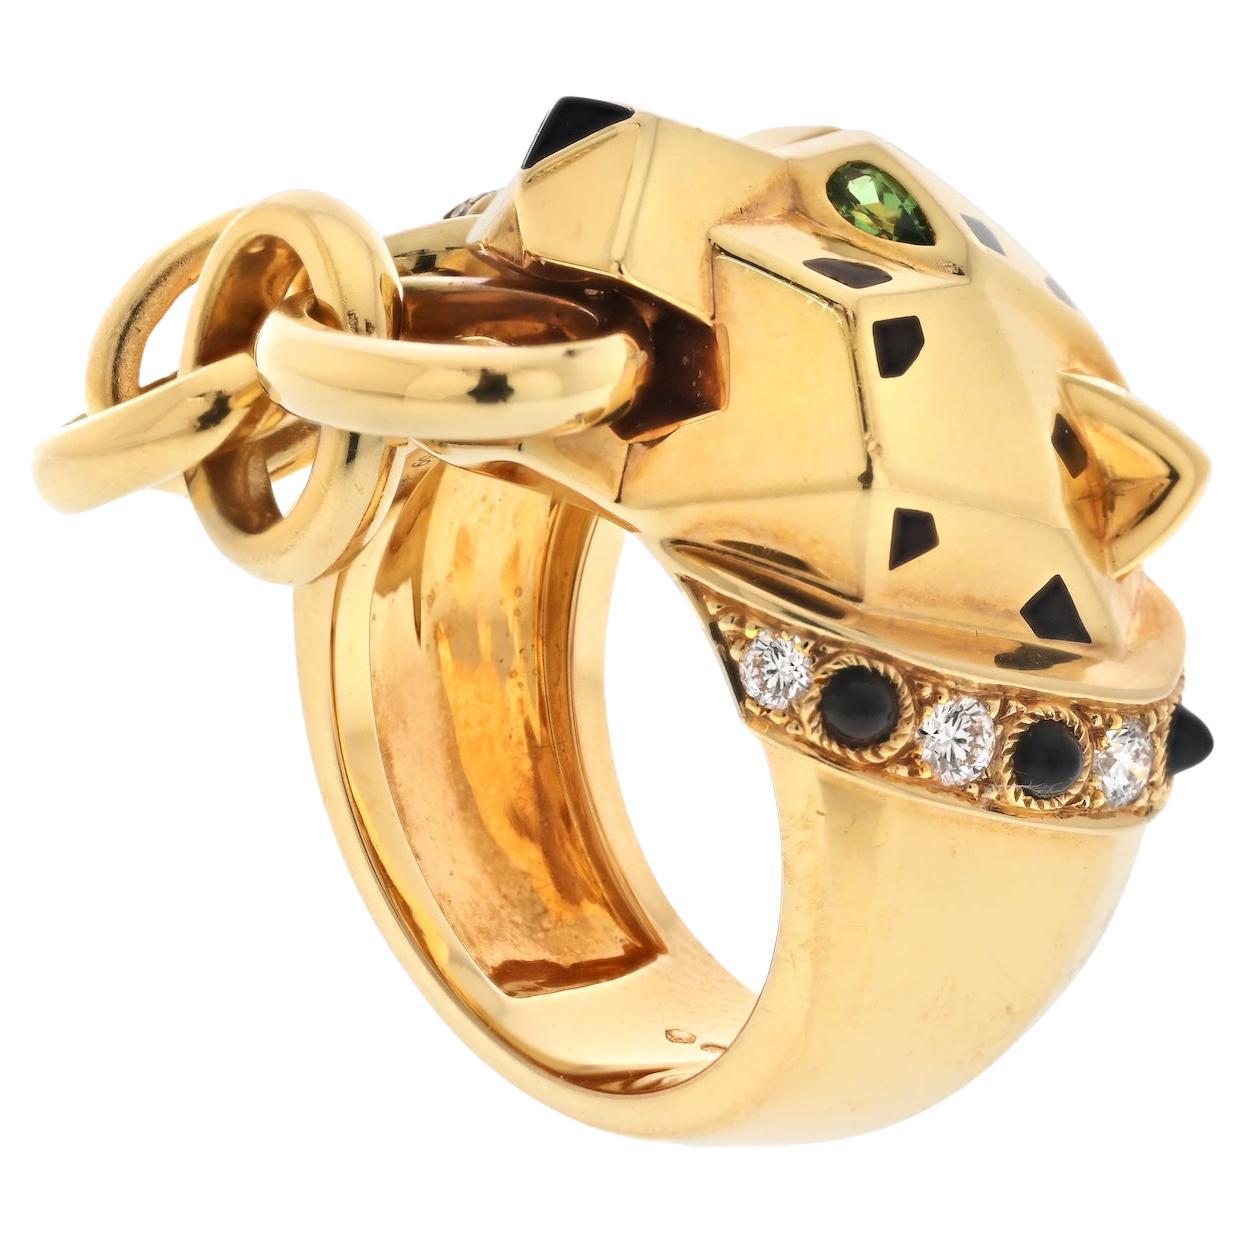 Erhöhen Sie Ihren Stil mit diesem exquisiten Stück hochwertigen Luxusschmucks von Cartier. Dieses sorgfältig aus 18-karätigem Gelbgold gefertigte Meisterwerk zeigt ein atemberaubendes Pantherkopf-Motiv, das mit kostbaren Details verziert ist.

Der